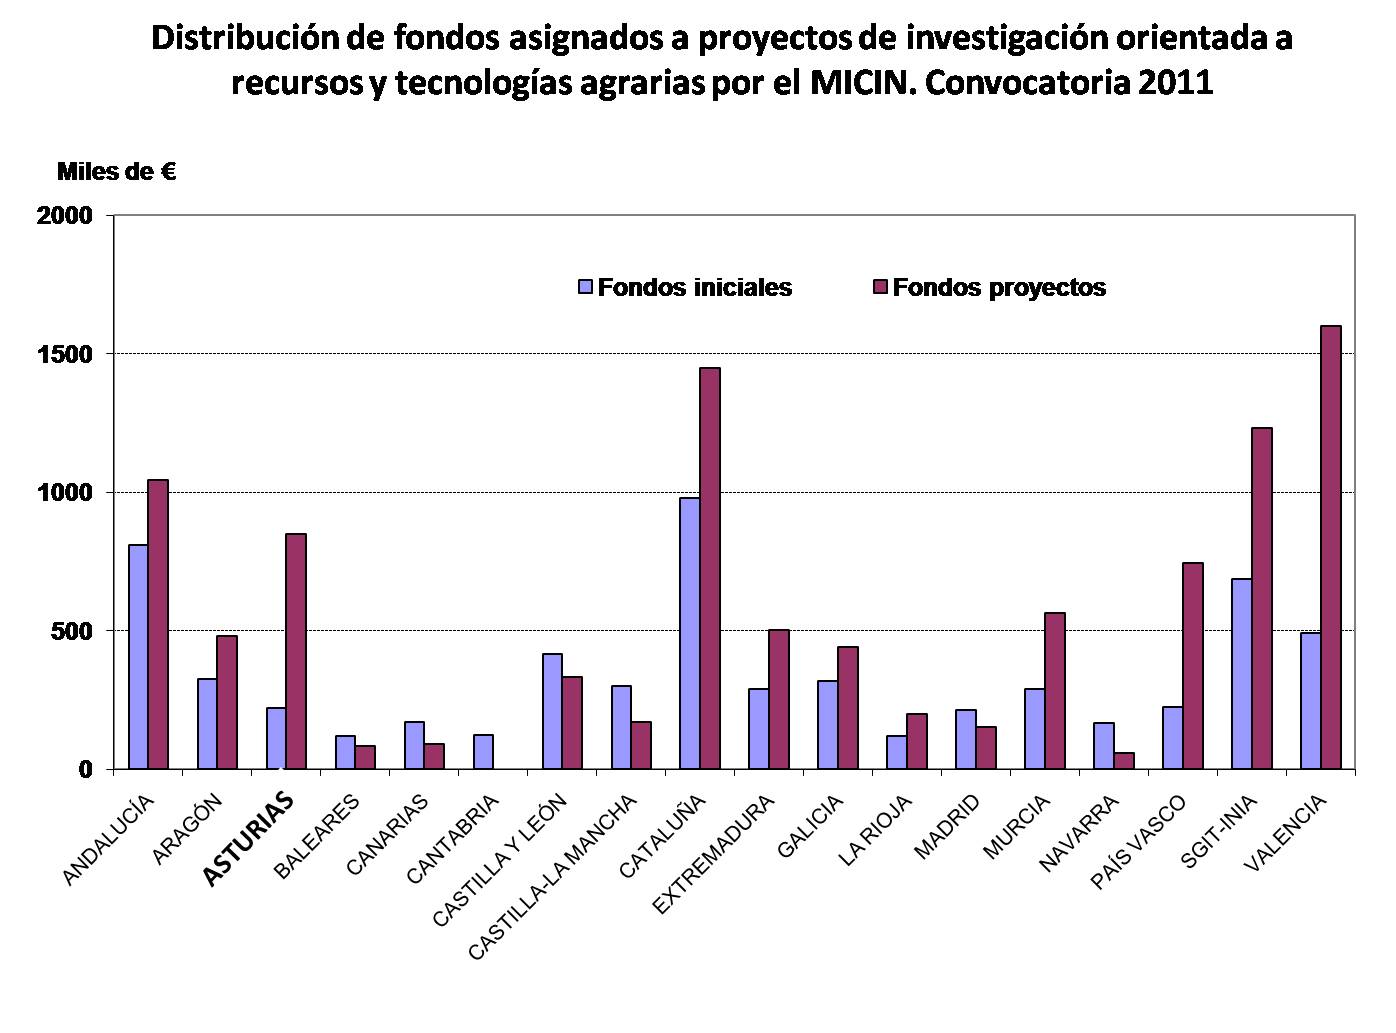 Gráfico de distribución de fondos asignados a proyectos de investigación orientada a recursos y tecnologías agrarias por el MICIN en la convocatoria de 2011. 